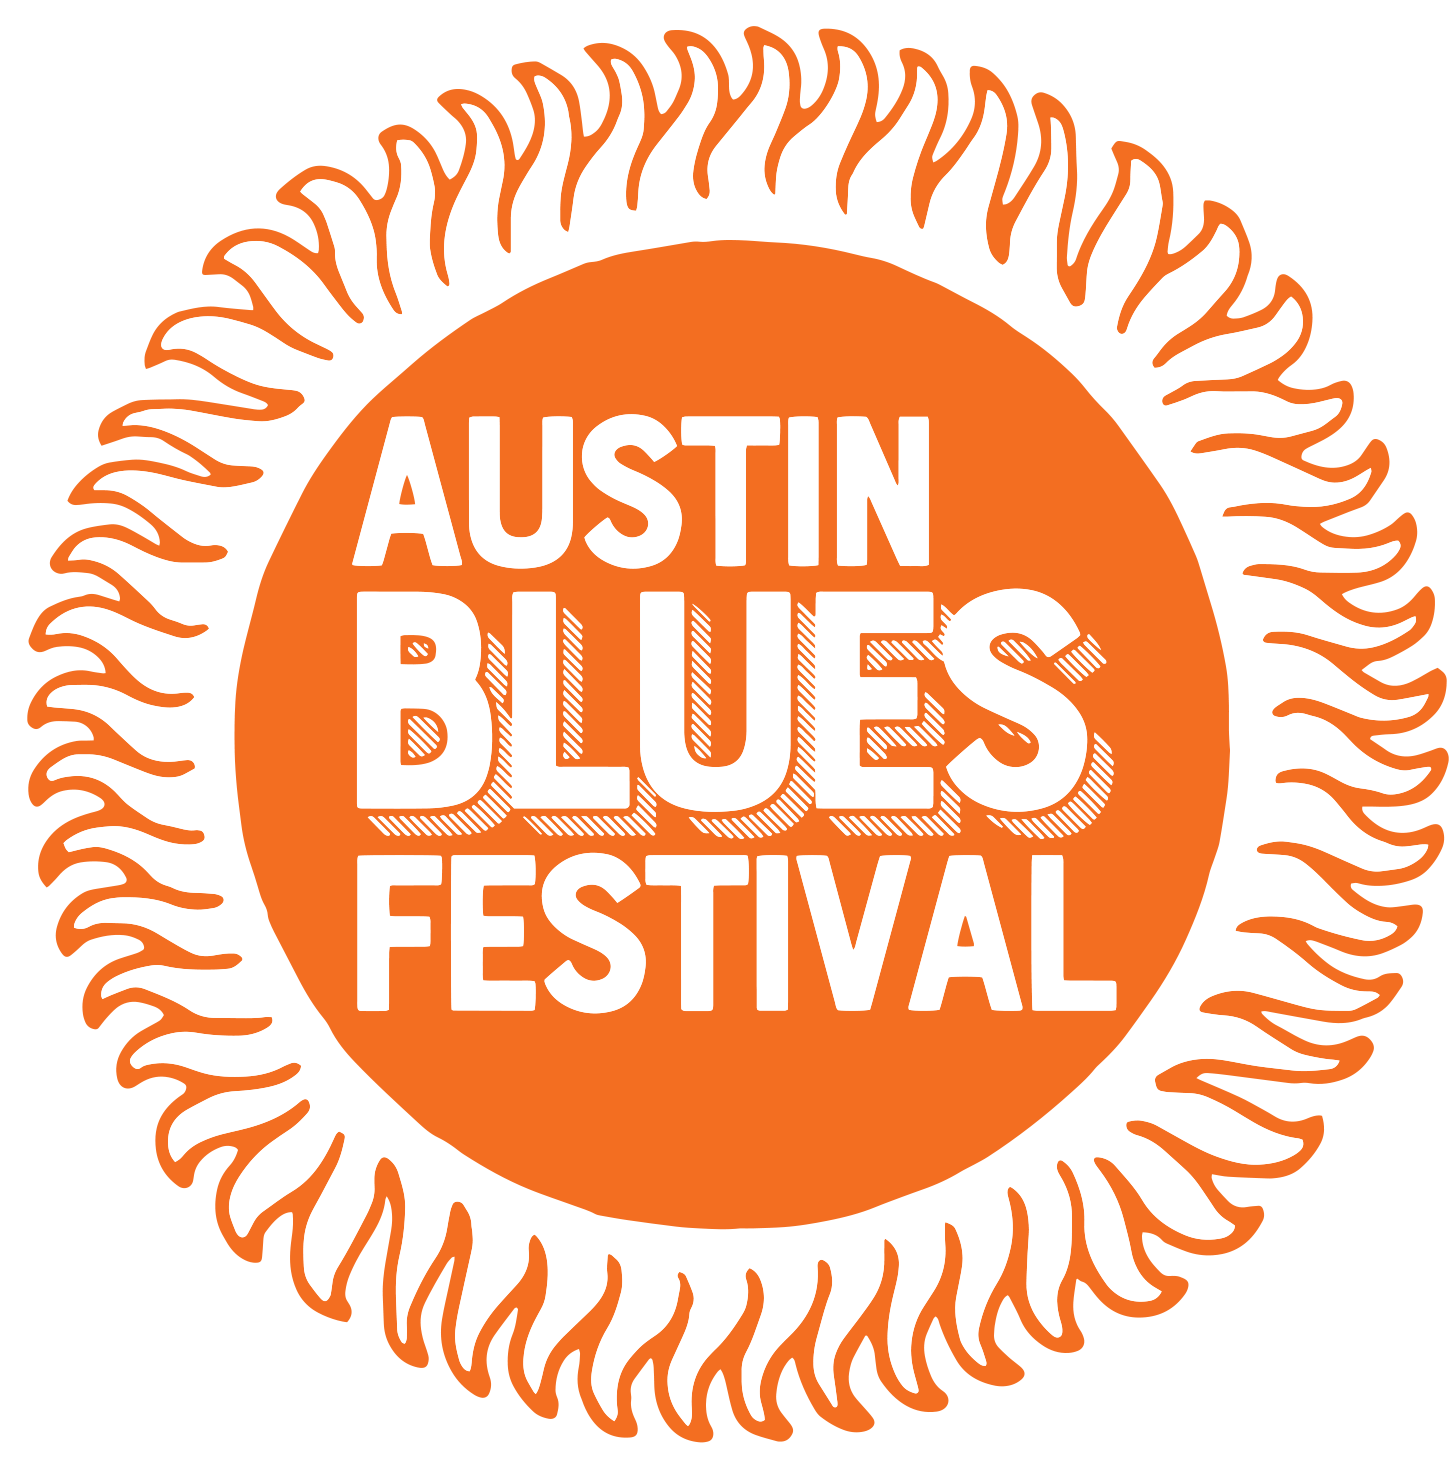 Austin Blues Festival — April 27-28, 2024